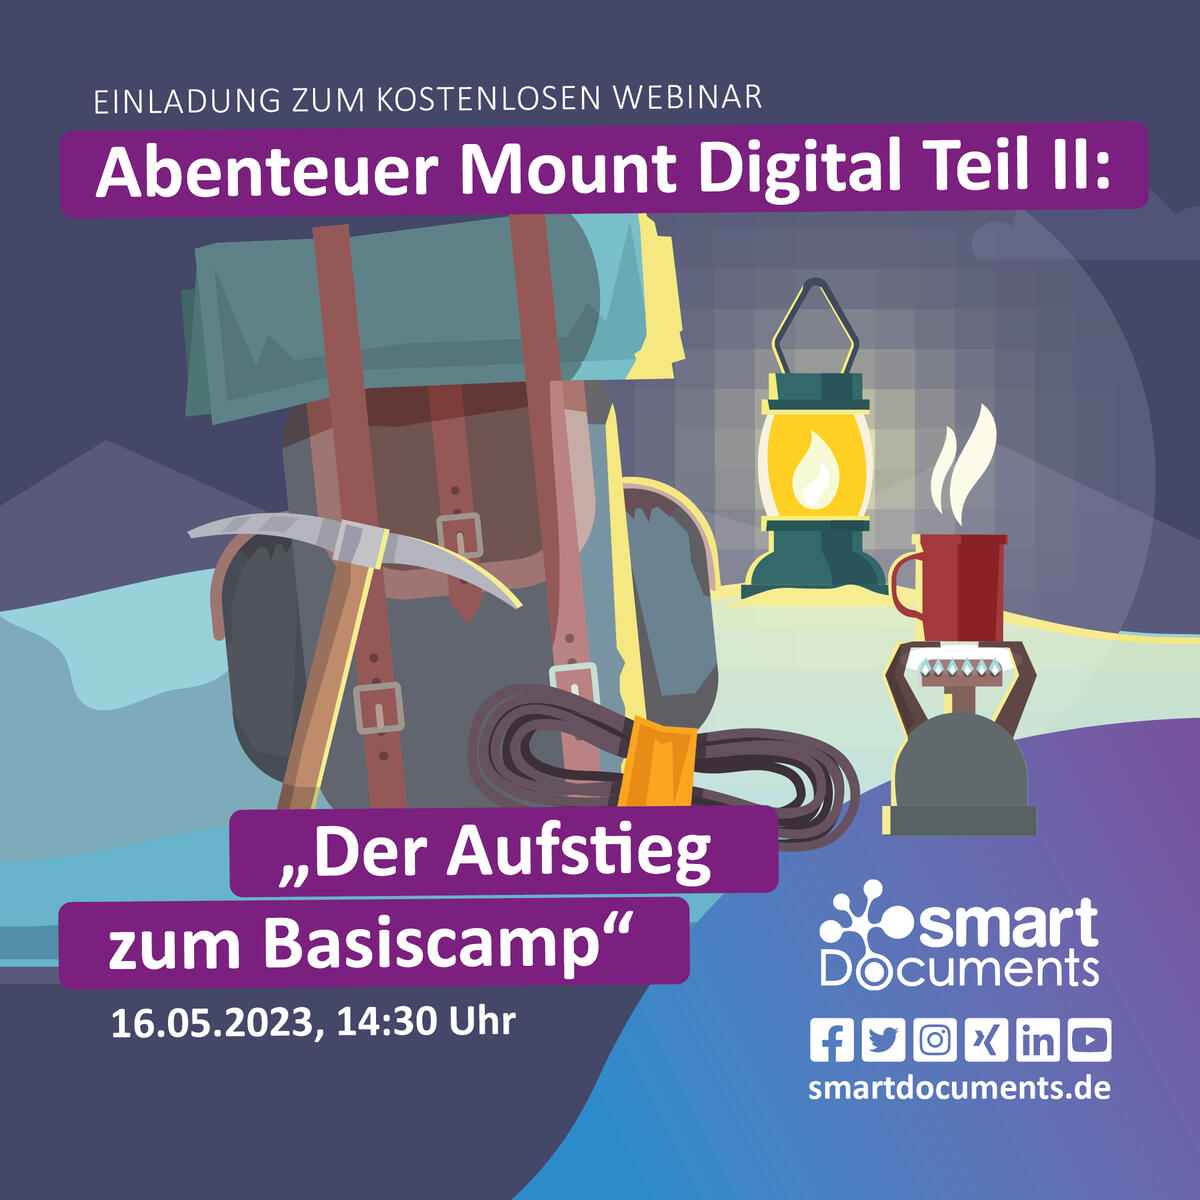 Wir laden Sie herzlich ein zu unserem kostenlosen Webinar: Abenteuer Mount Digital Teil II "Der Aufstieg zum Basiscamp". Wann? am 16.05.2023 um 14:30 Uhr